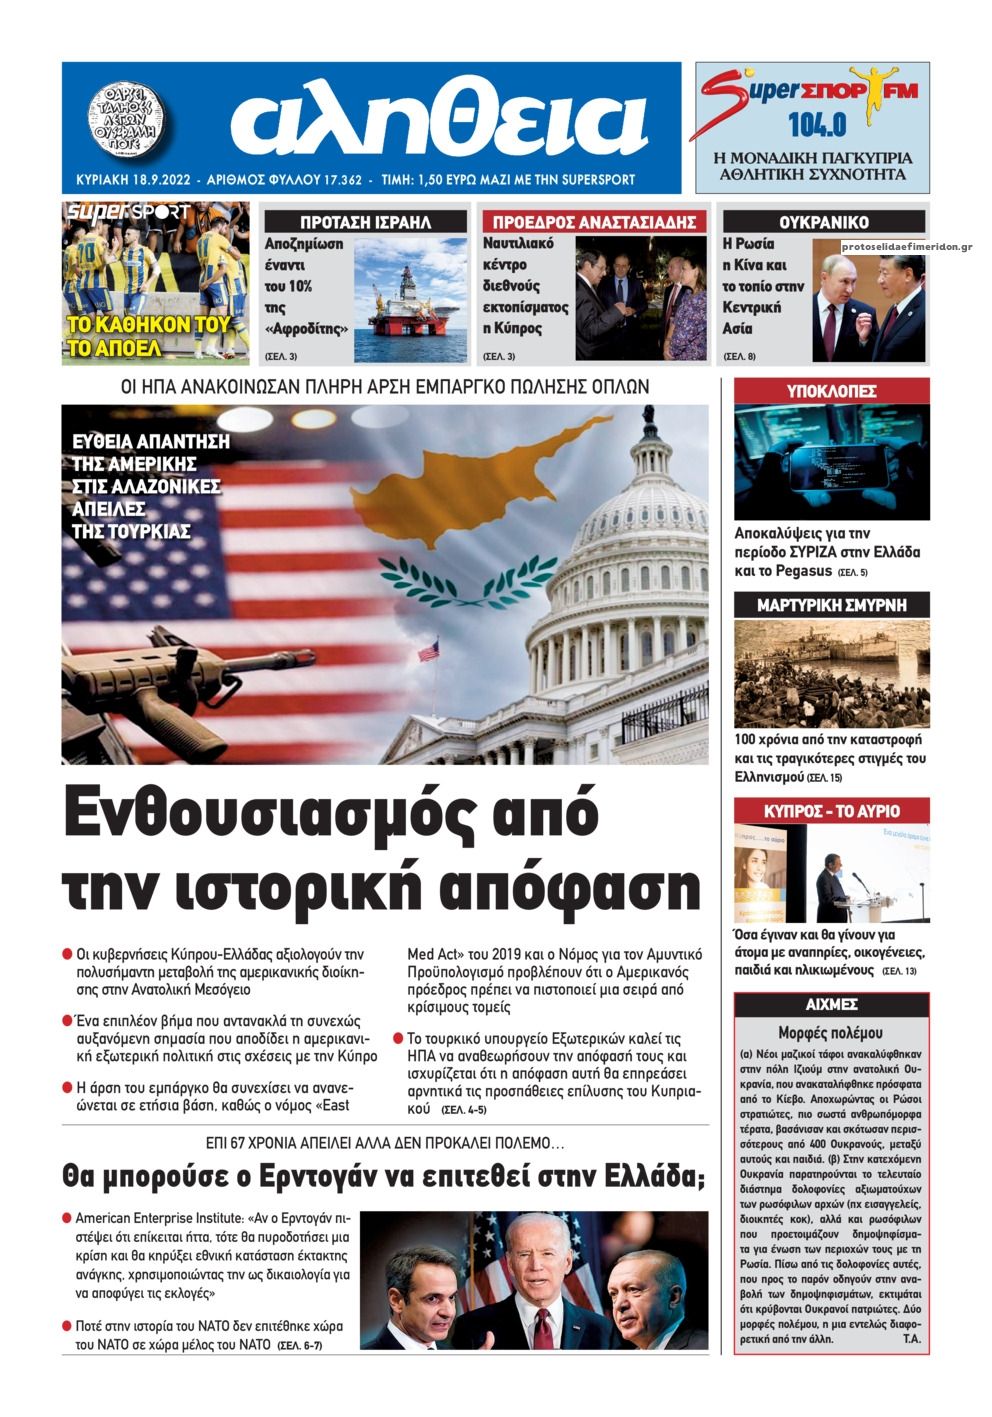 Πρωτοσέλιδο εφημερίδας Αλήθεια Κύπρου